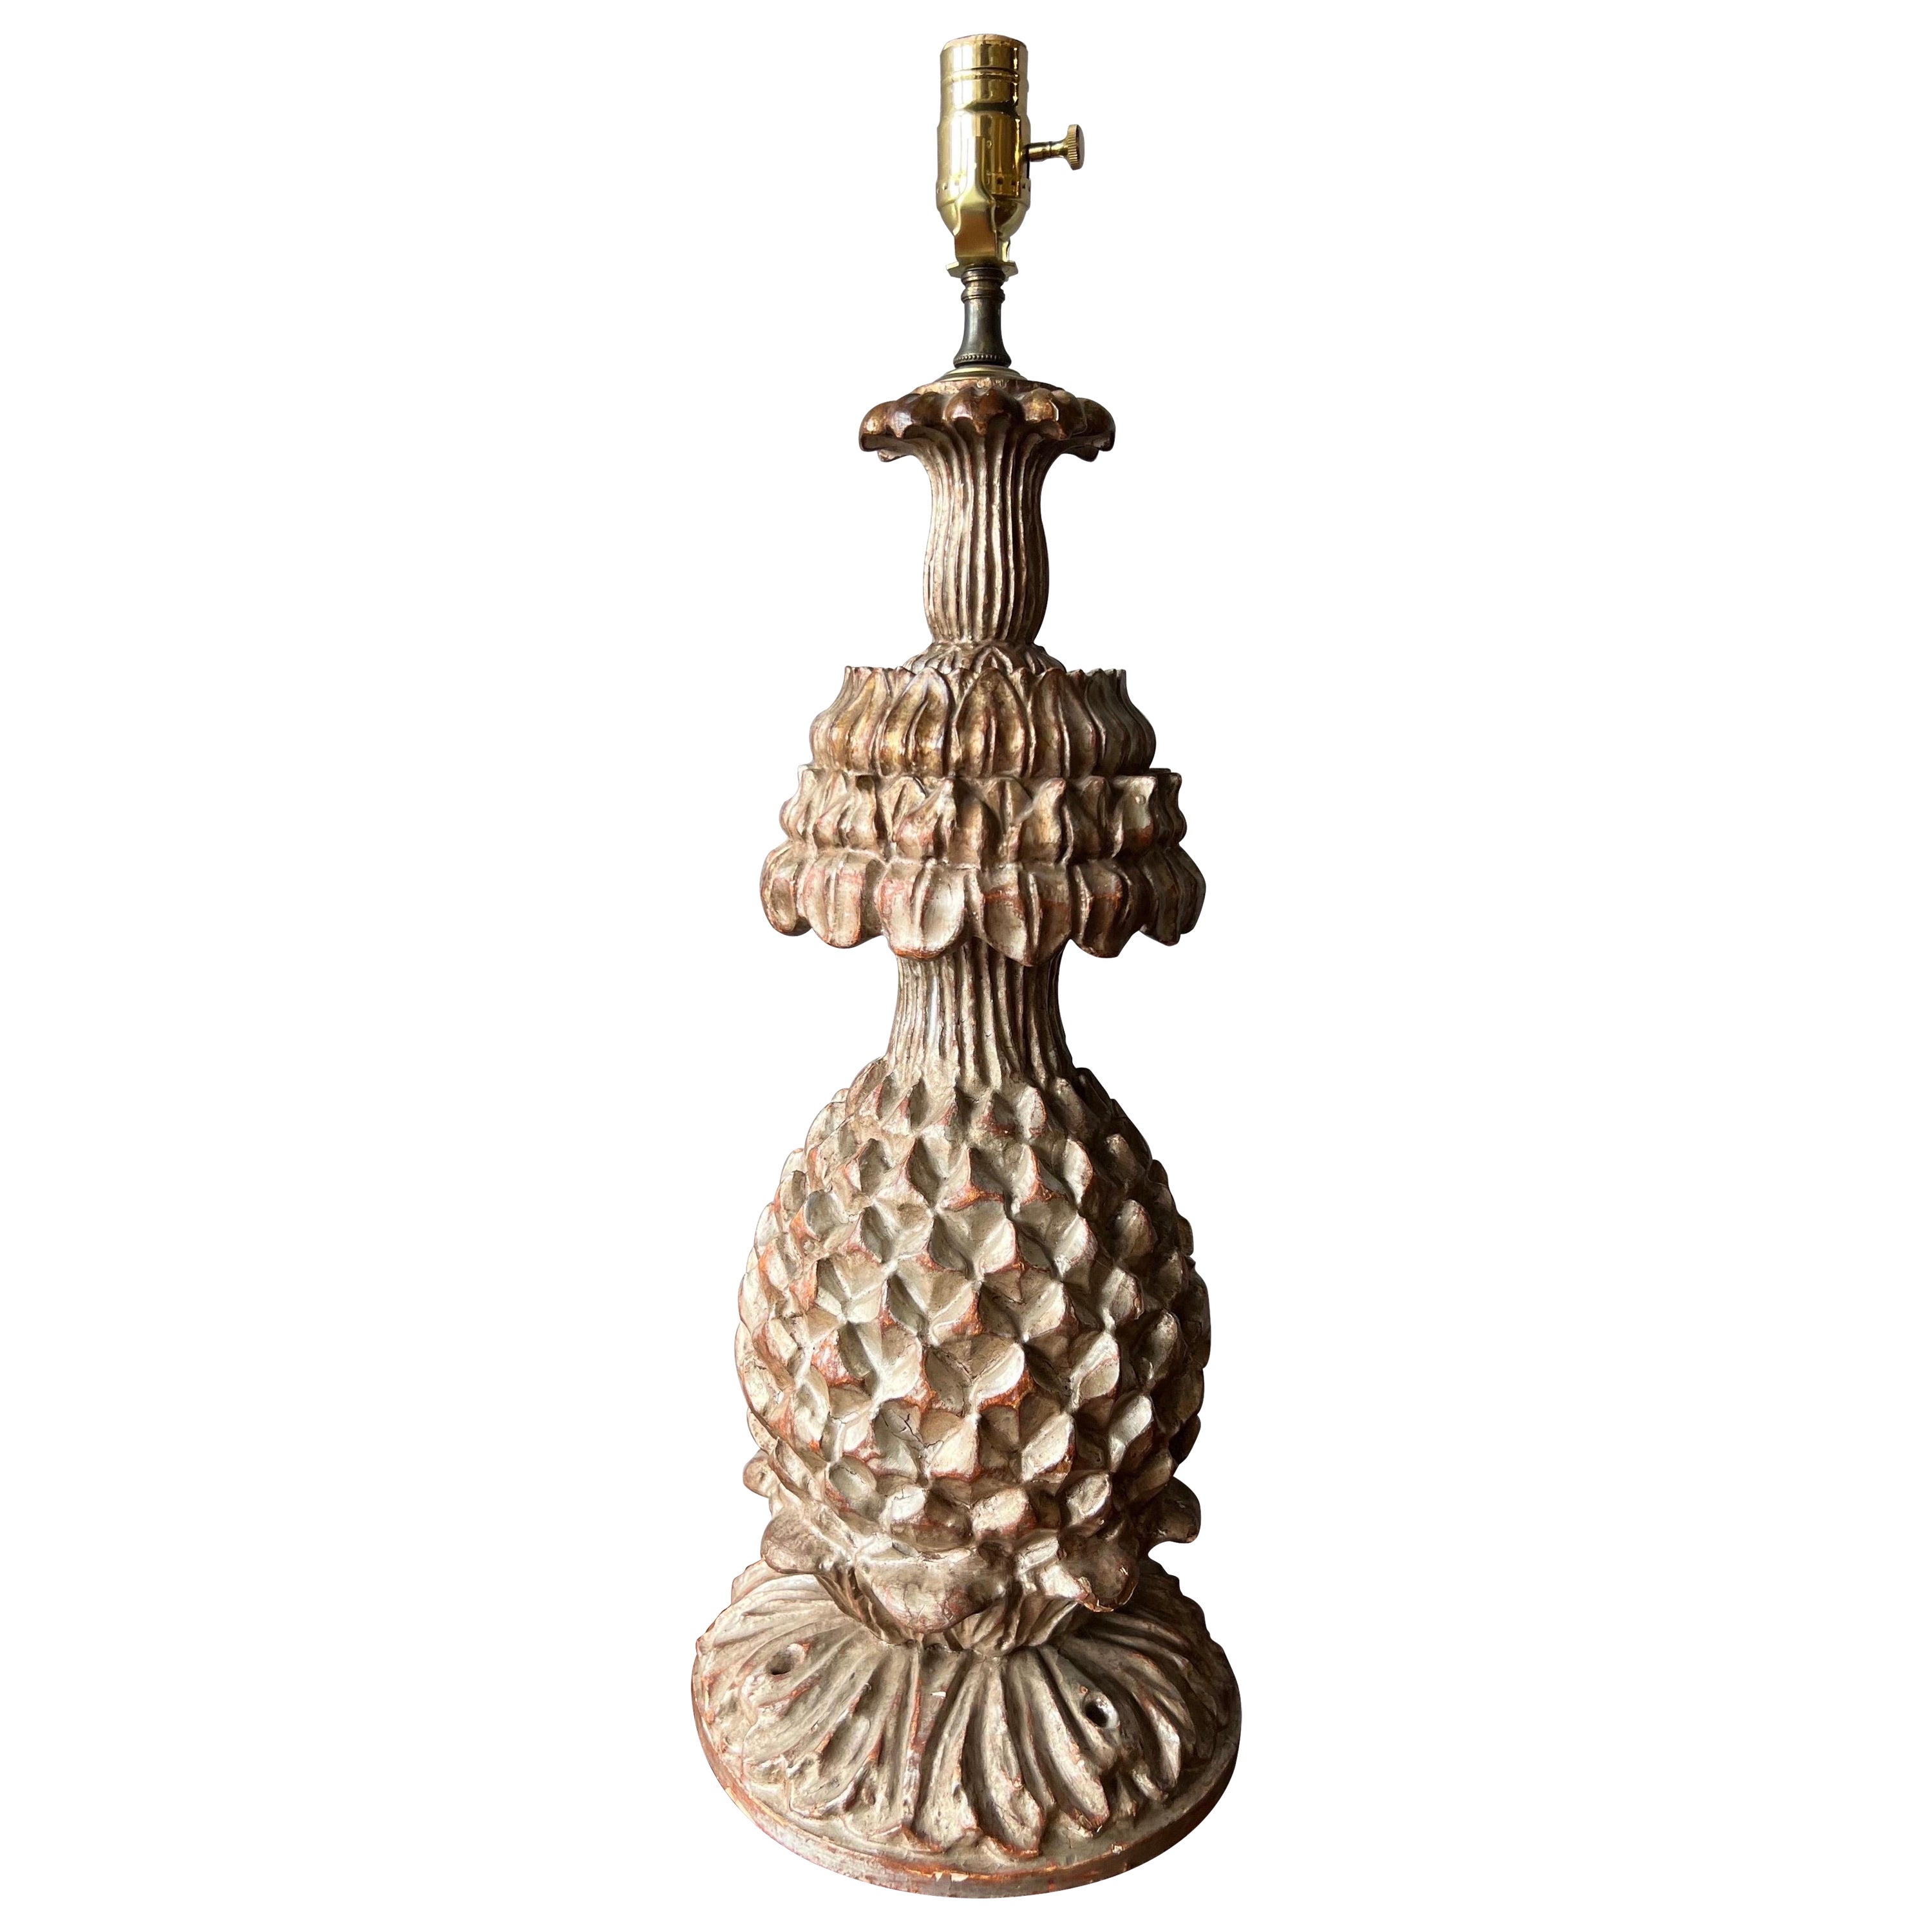 Lampe in stilisierter Ananasform mit Blattsilber aus dem 19. Jahrhundert